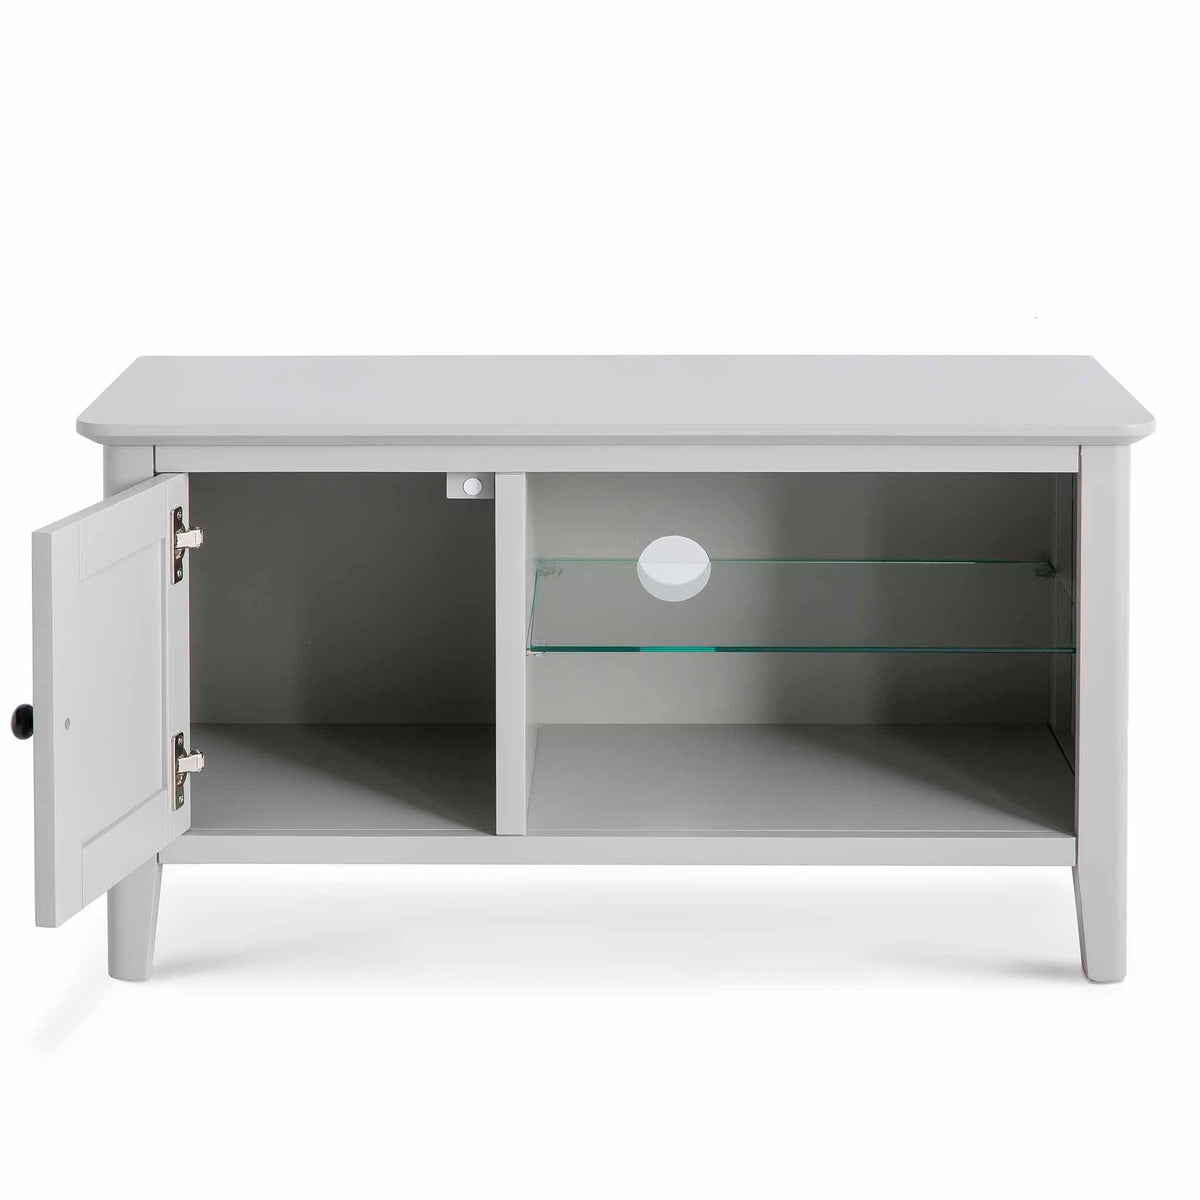 Elgin Grey 90cm Small TV Unit - Front view with cupboard door open